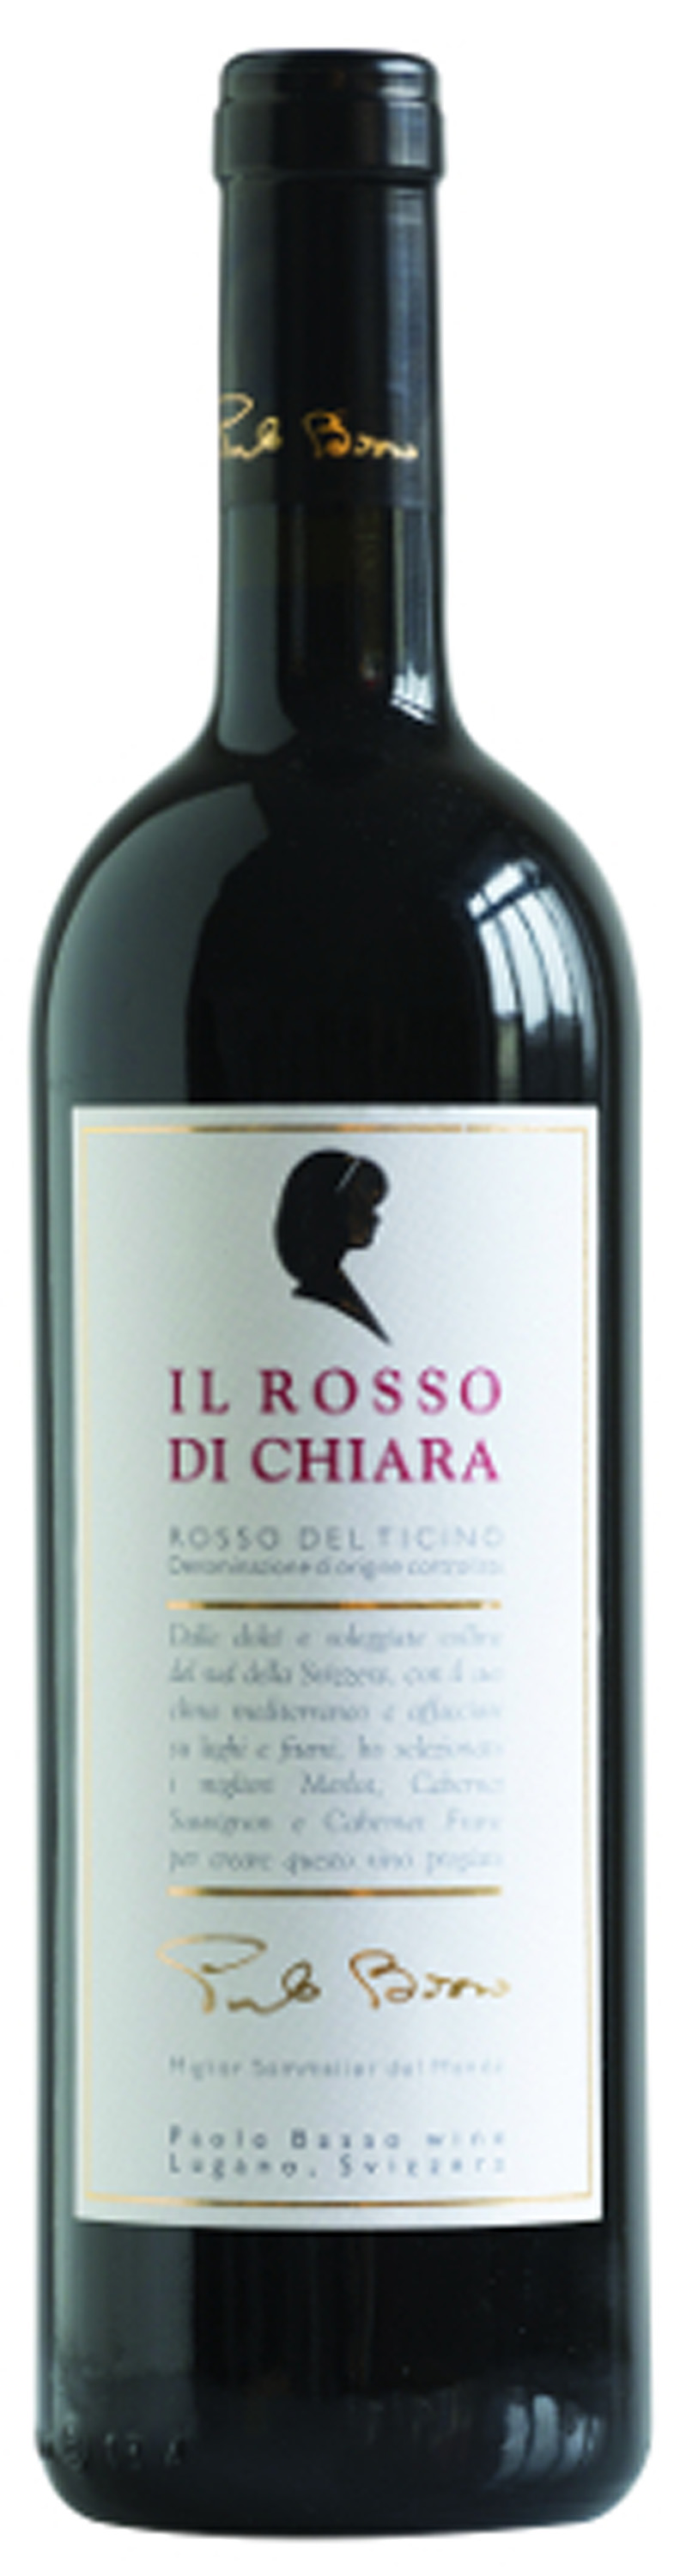 CH-Flasche-Basso-Bianco-di-Chiara.jpg